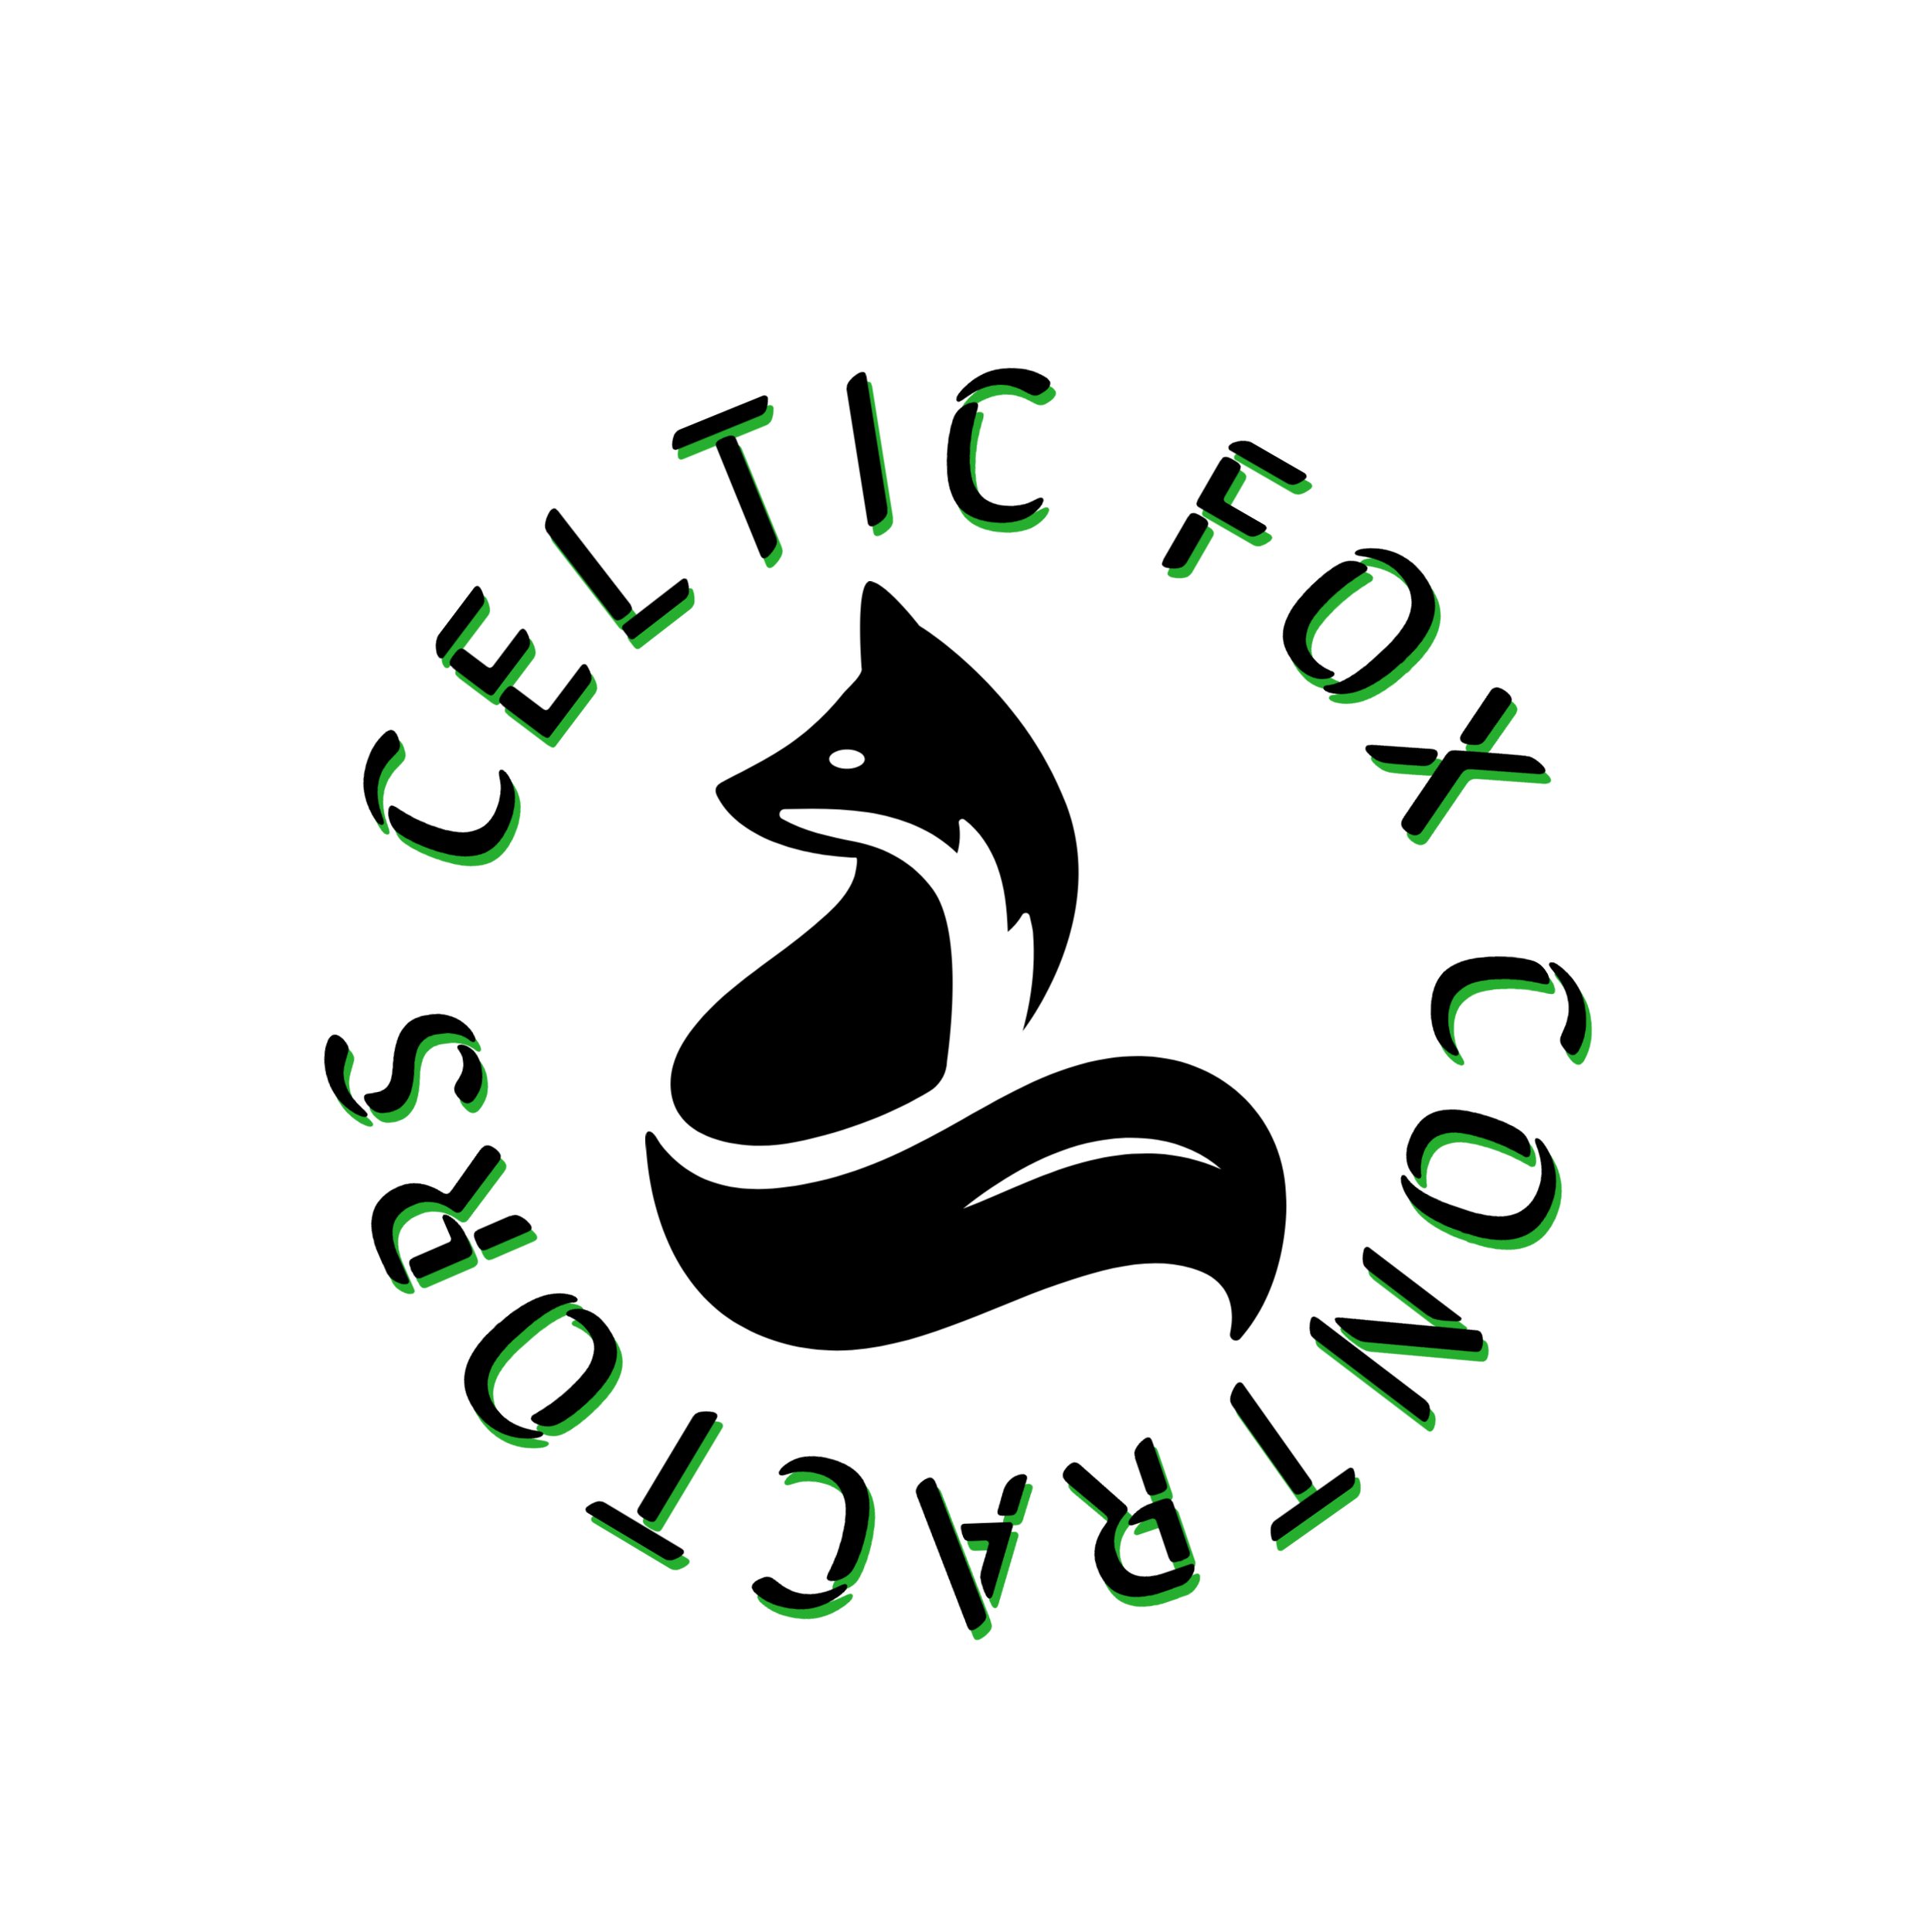 Celtic Fox contractors LLC